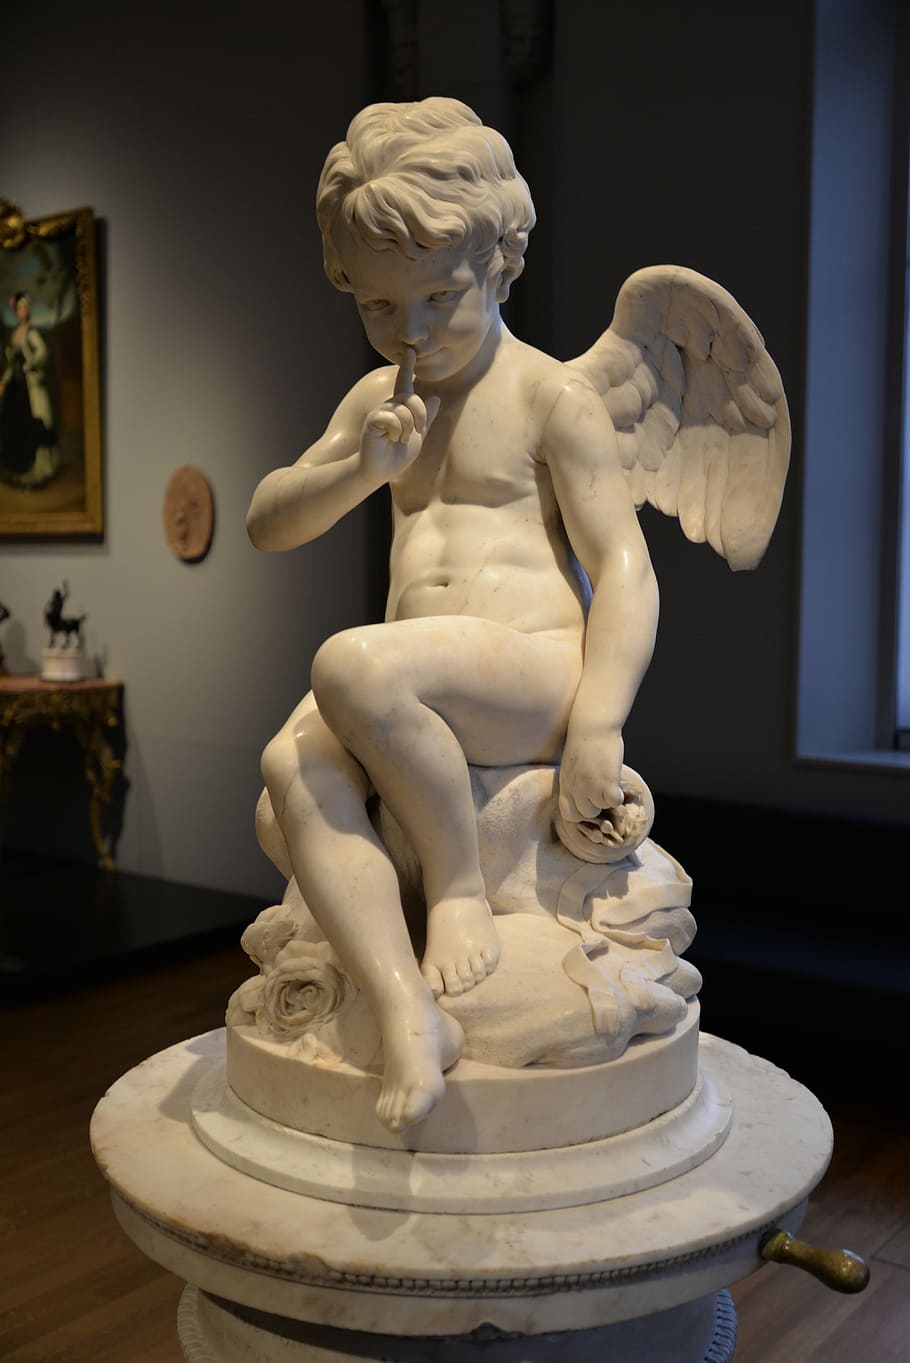 querubín, tallado, fotografía de figura de exhibición, ángel, escultura, silencio, mármol, museo, rijksmuseum, cupido sentado